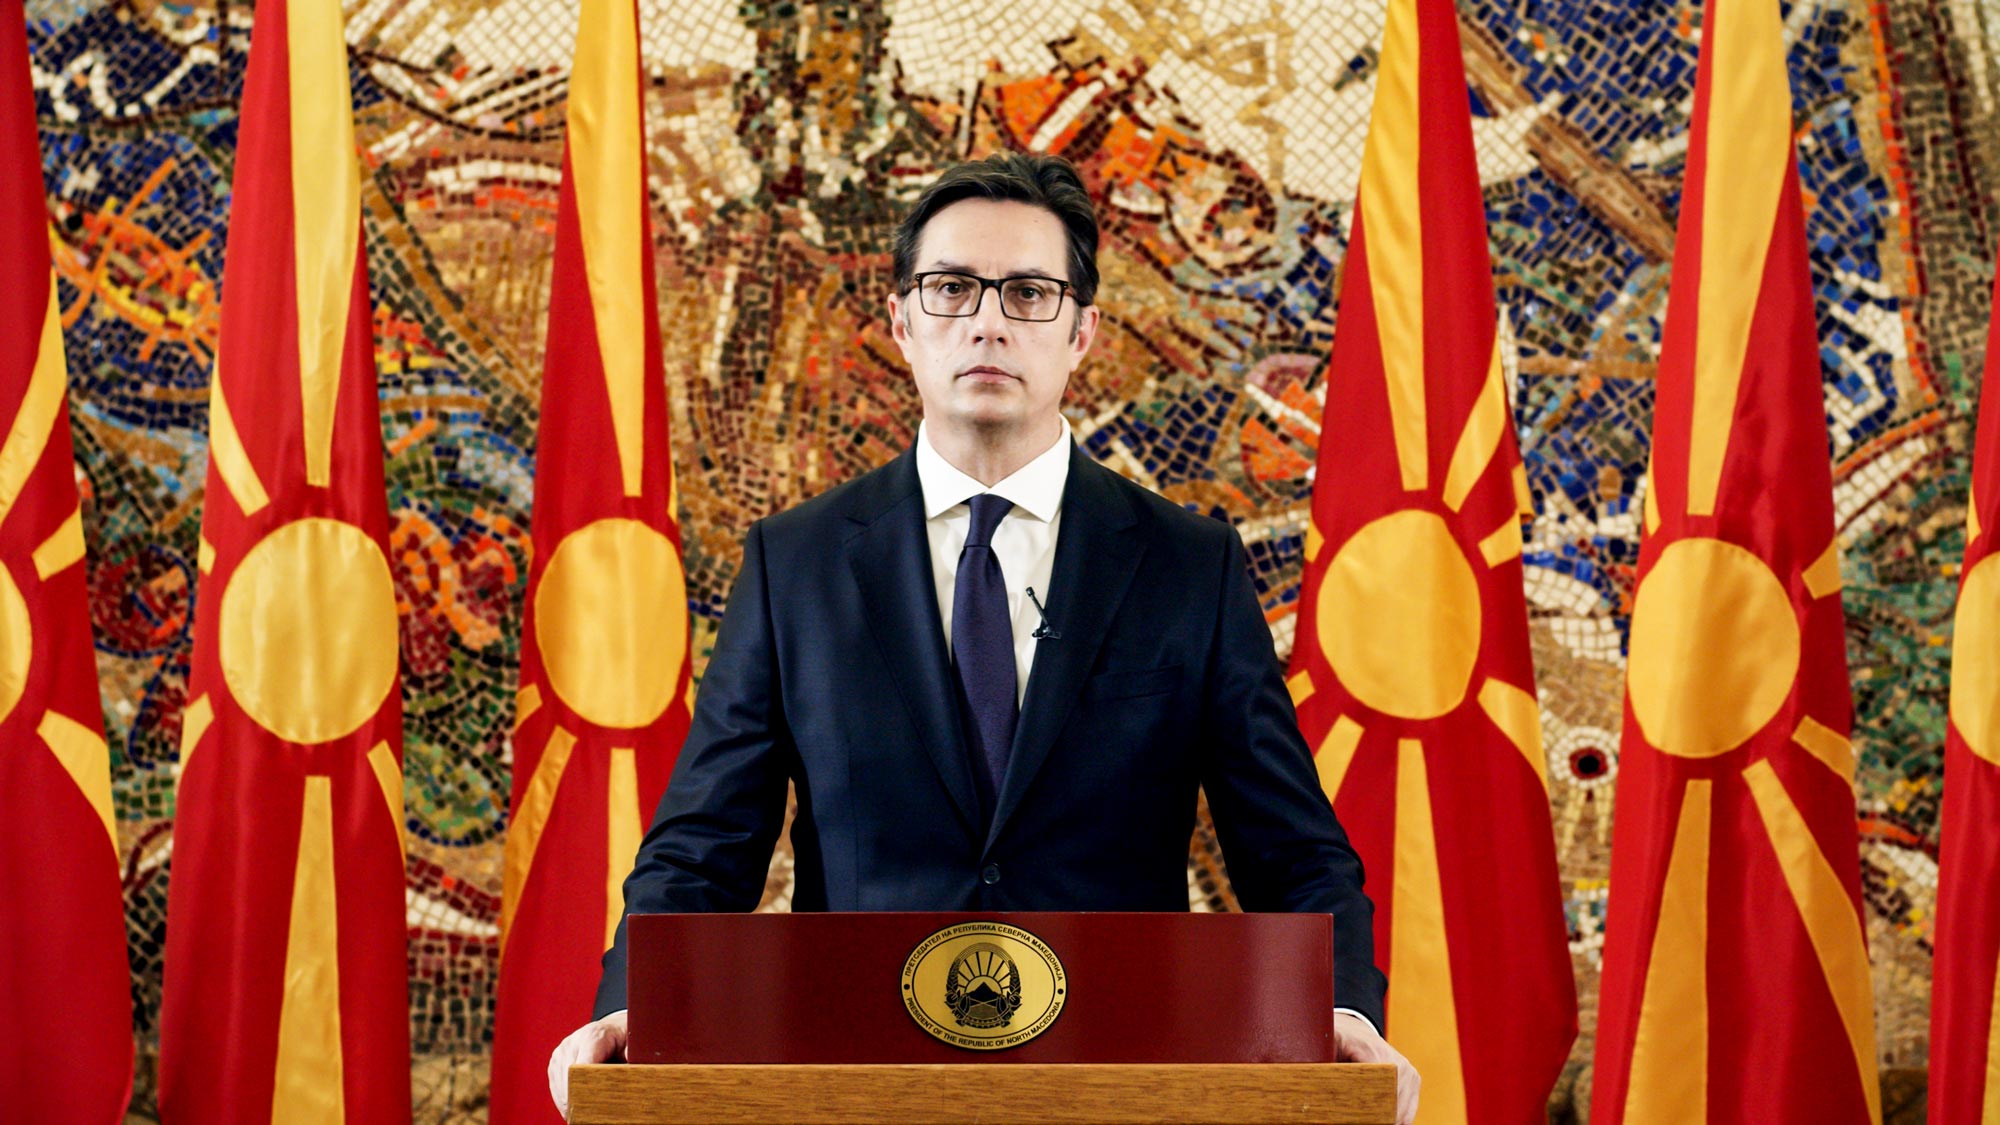 Обраќање на Пендаровски во ОН: Македонија ќе остане посветена на мирно решавање на сите проблеми